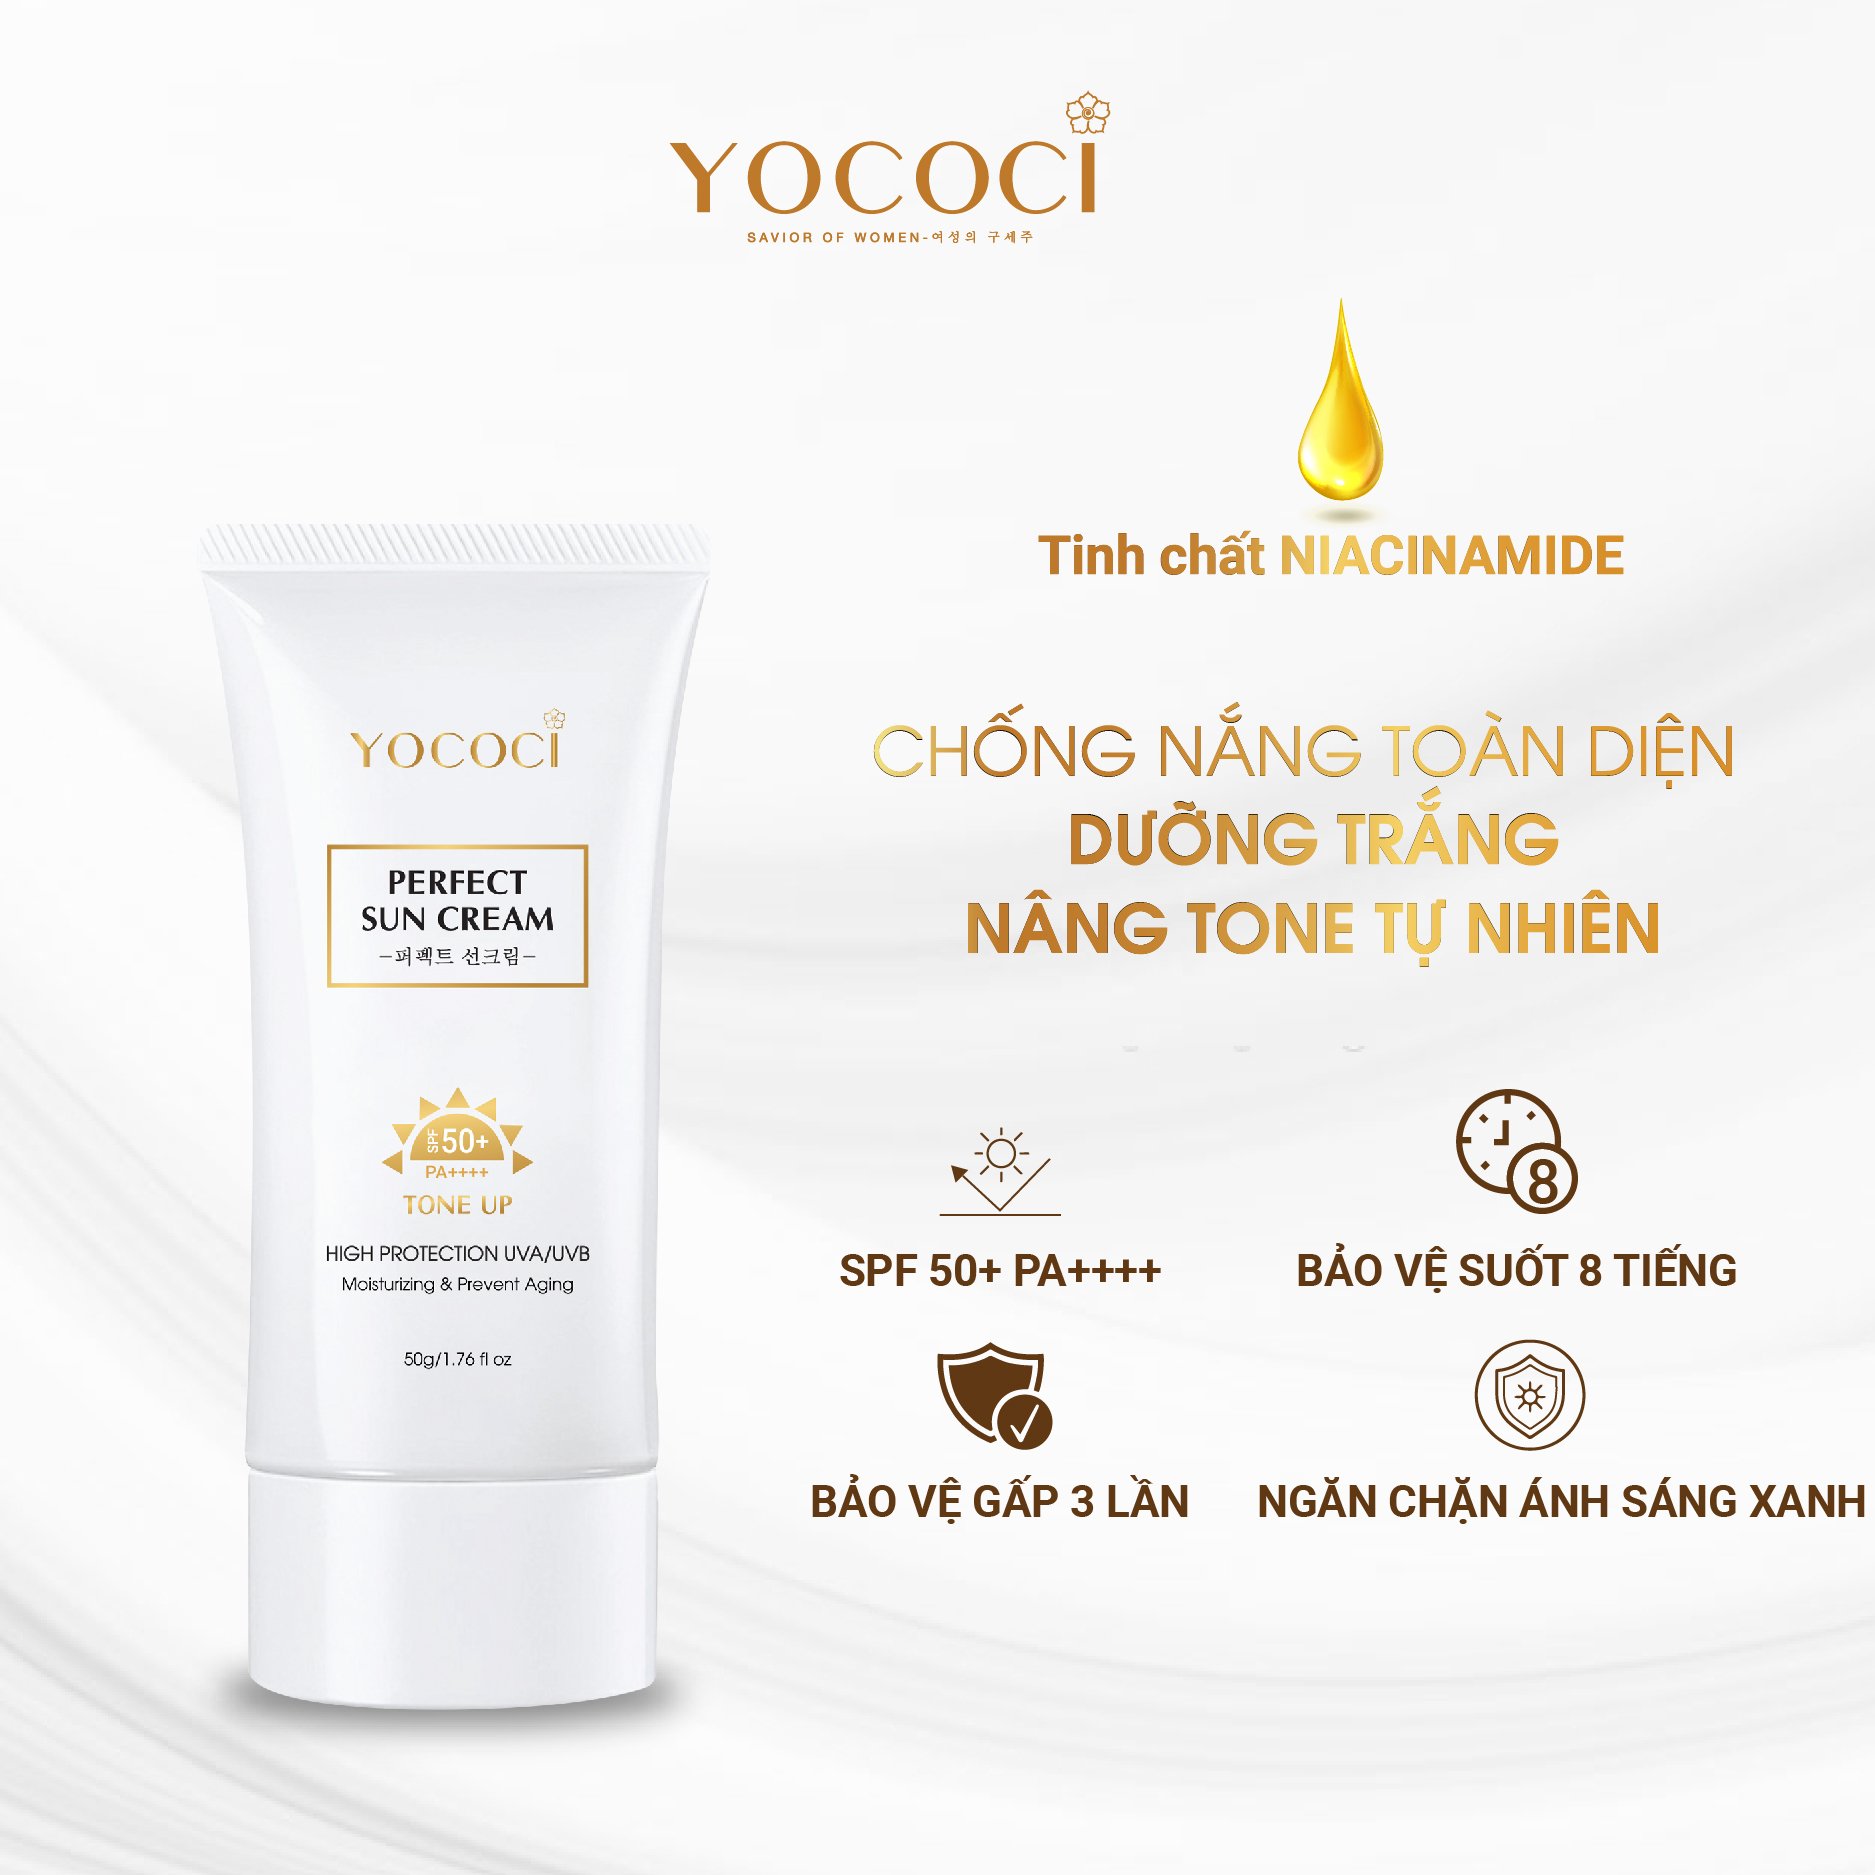 Kem chống nắng Yococi Phổ rộng màng lọc đa tầng, nâng tone tự nhiên Perfect Sun Cream SPF50+ PA++++ 50g